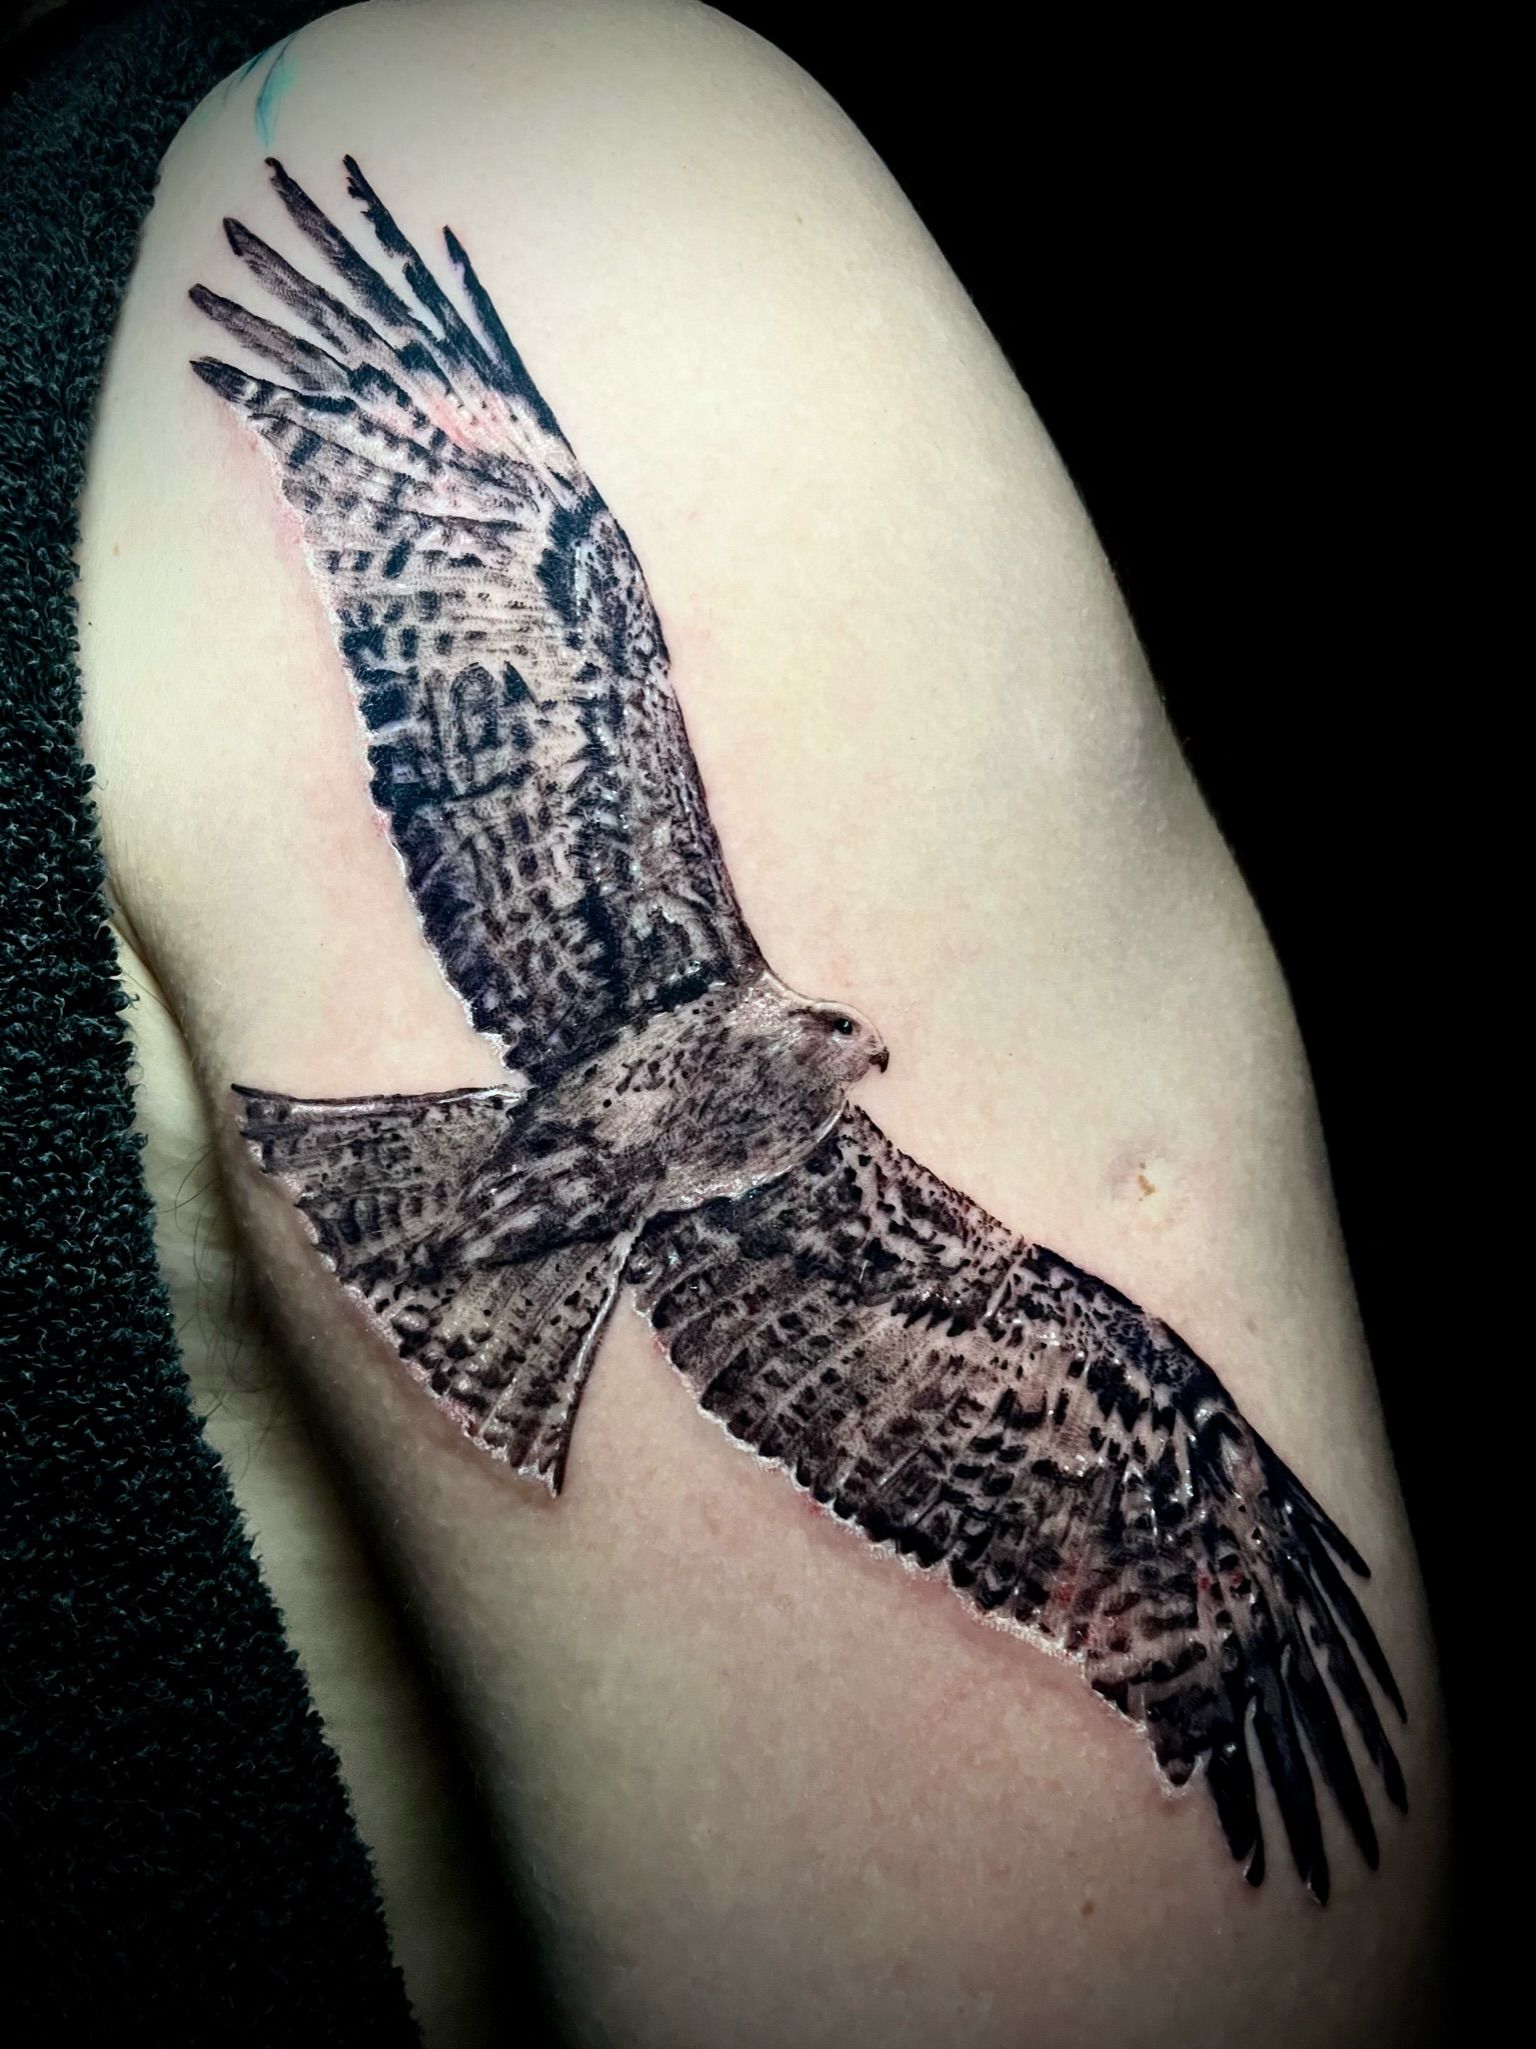 32 BIRDS OF PREY  TATTOO ideas  bird of prey tattoo tattoo designs art  tattoo